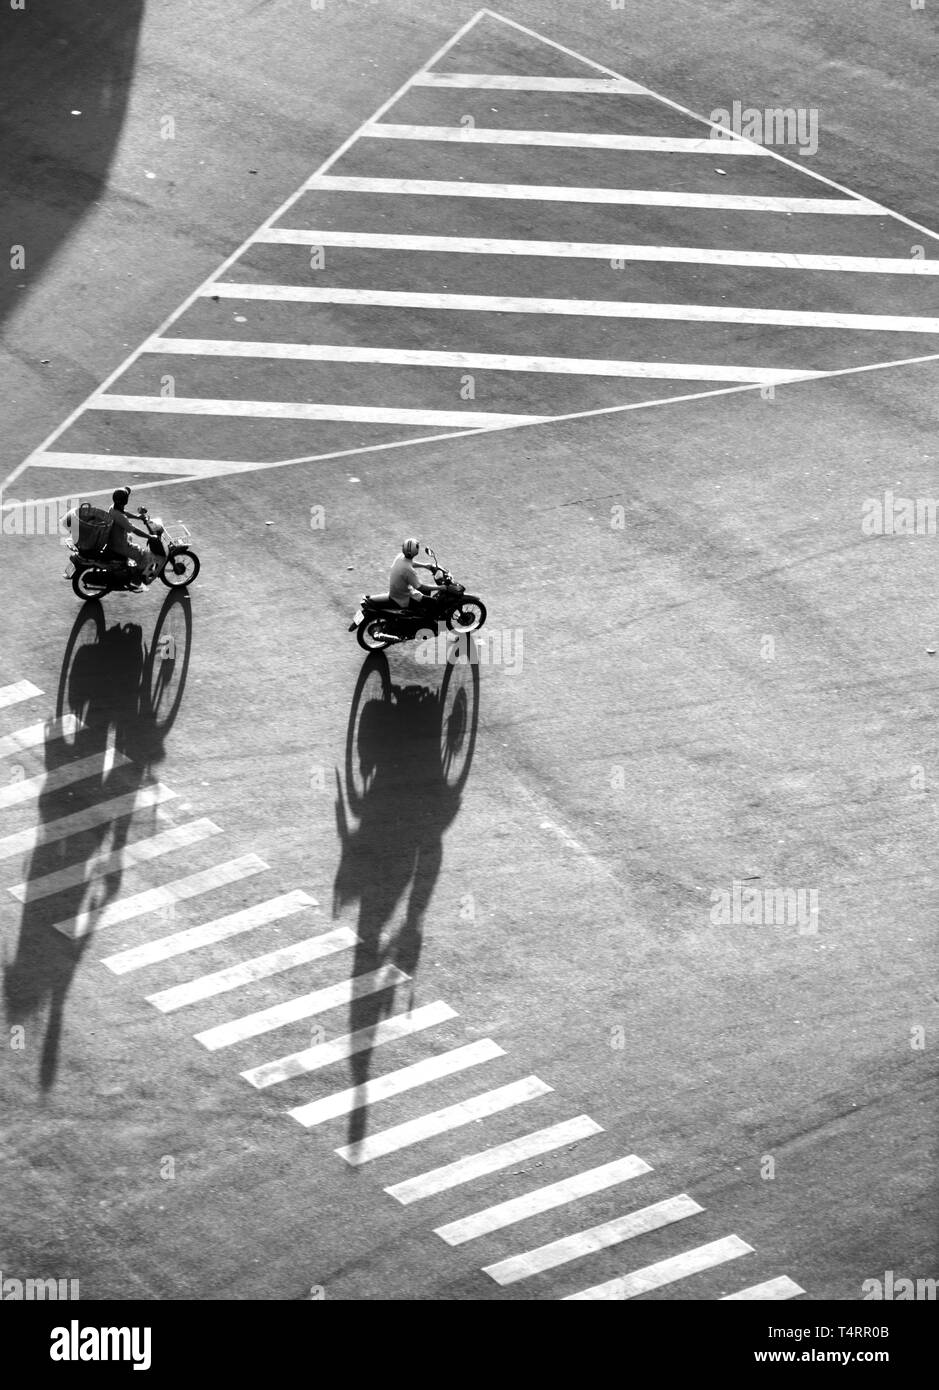 Increíble vista de alta escena en la calle en la ciudad de Asia, grupo de vietnamitas motocicletas moviendo con sombra sobre la superficie de la carretera realizar impresión de forma Foto de stock